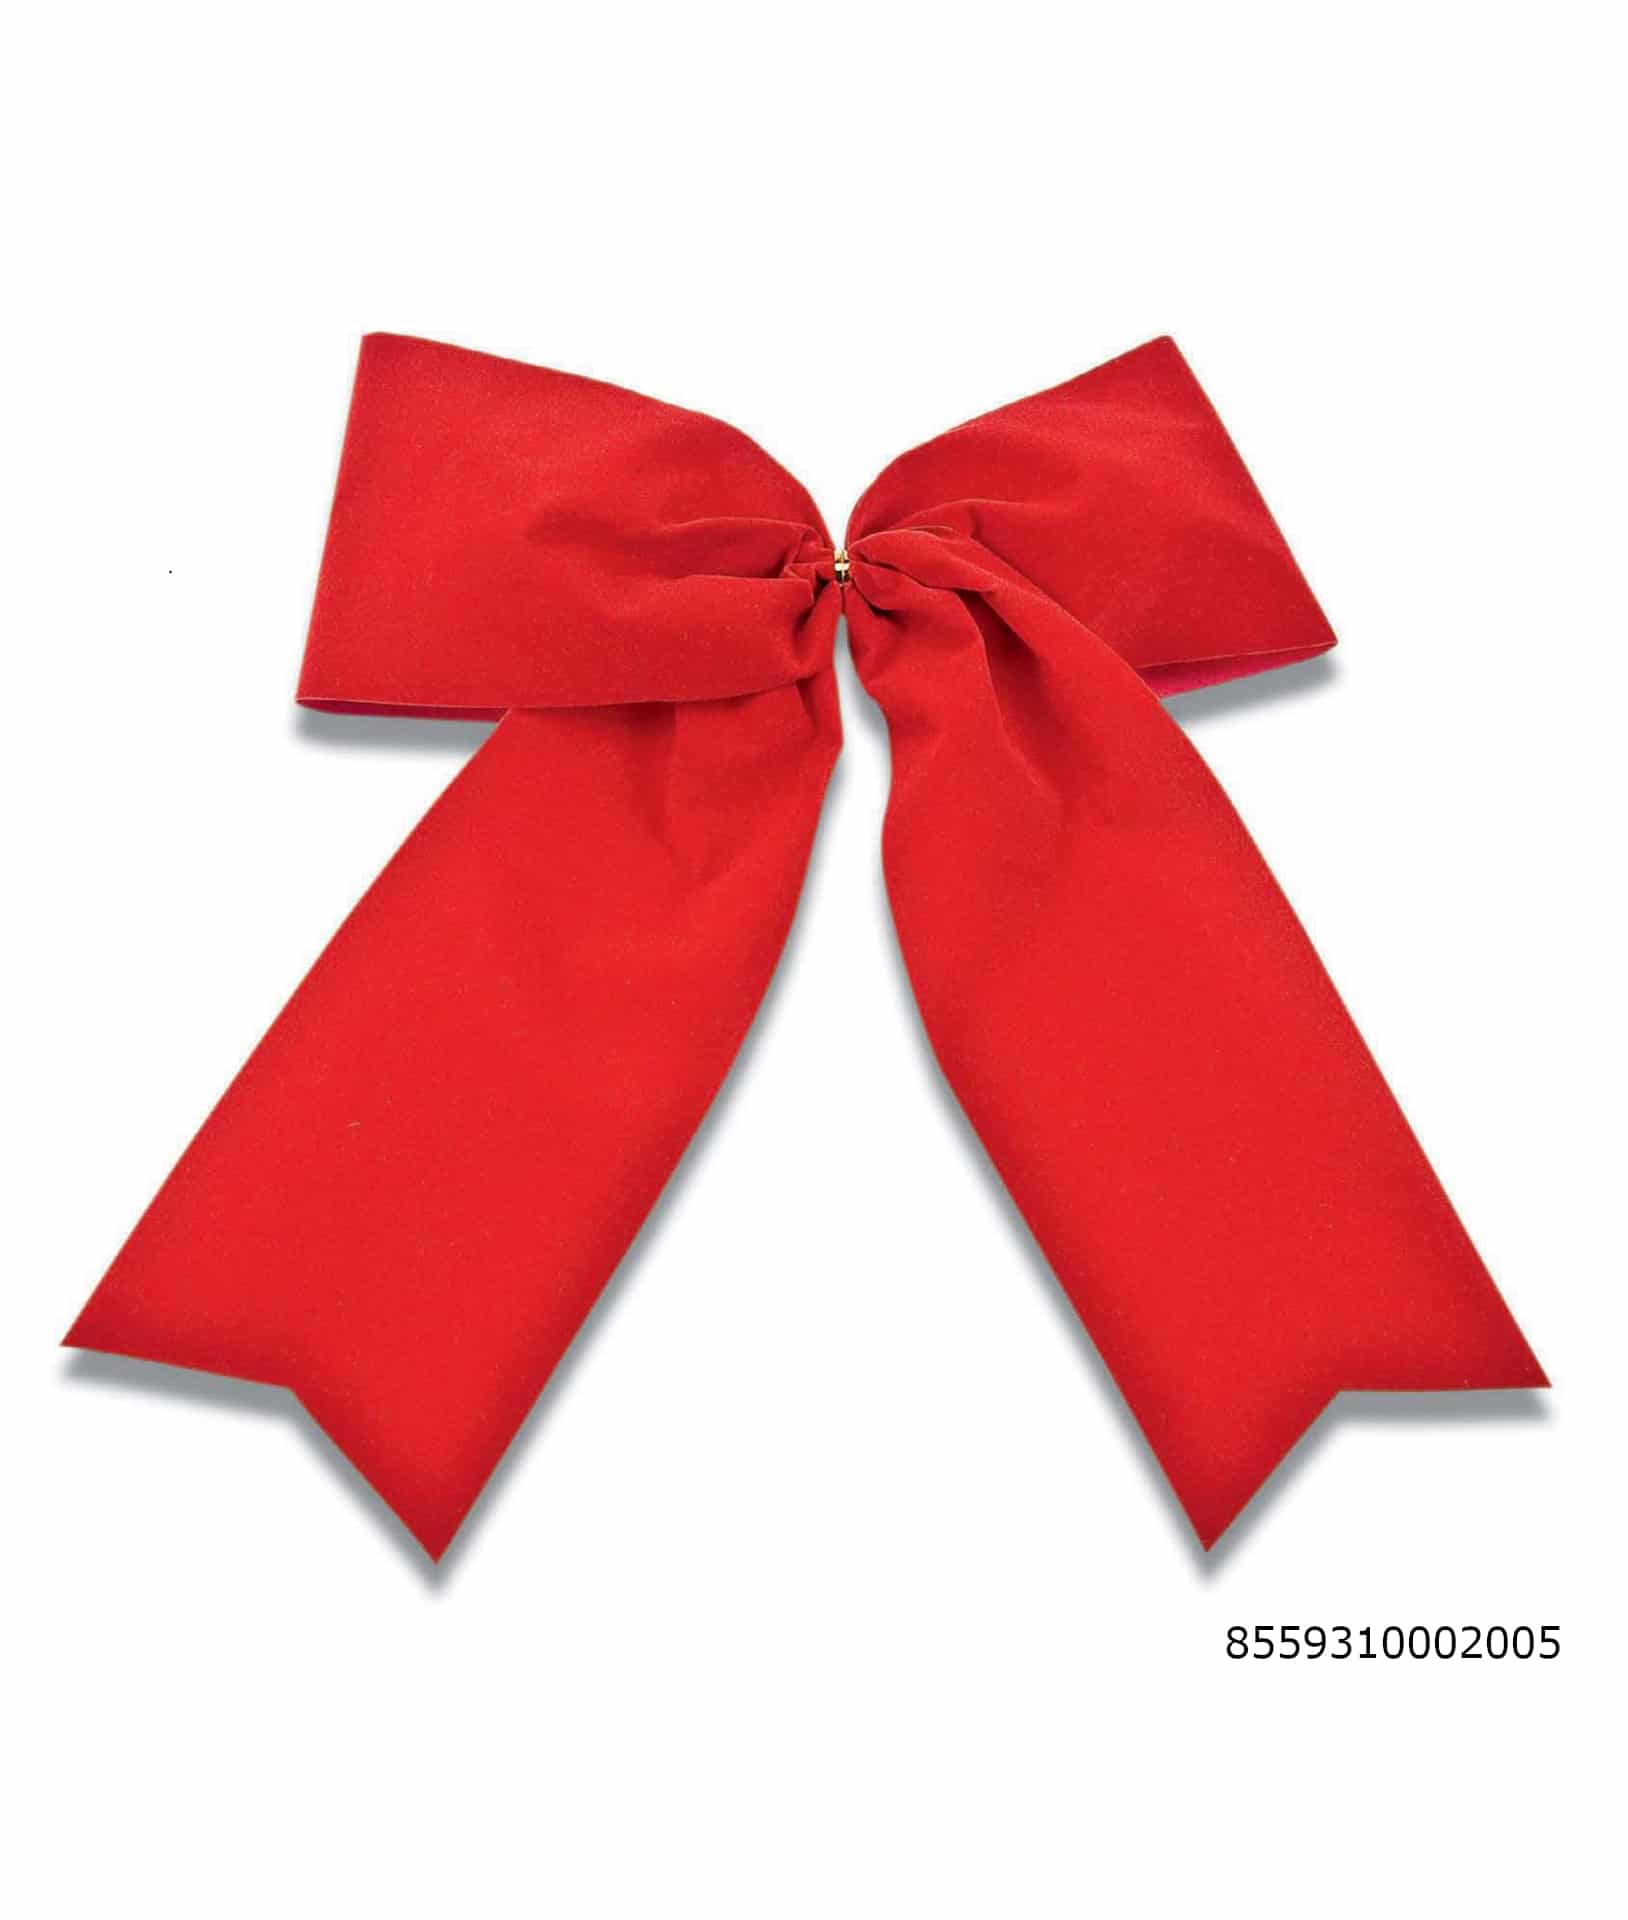 Große Samtschleife rot, Durchmesser ca. 26cm, Outdoor geeignet - weihnachtsbaender, weihnachtsband-2, geschenkverpackung, outdoor-bander, fertigschleifen